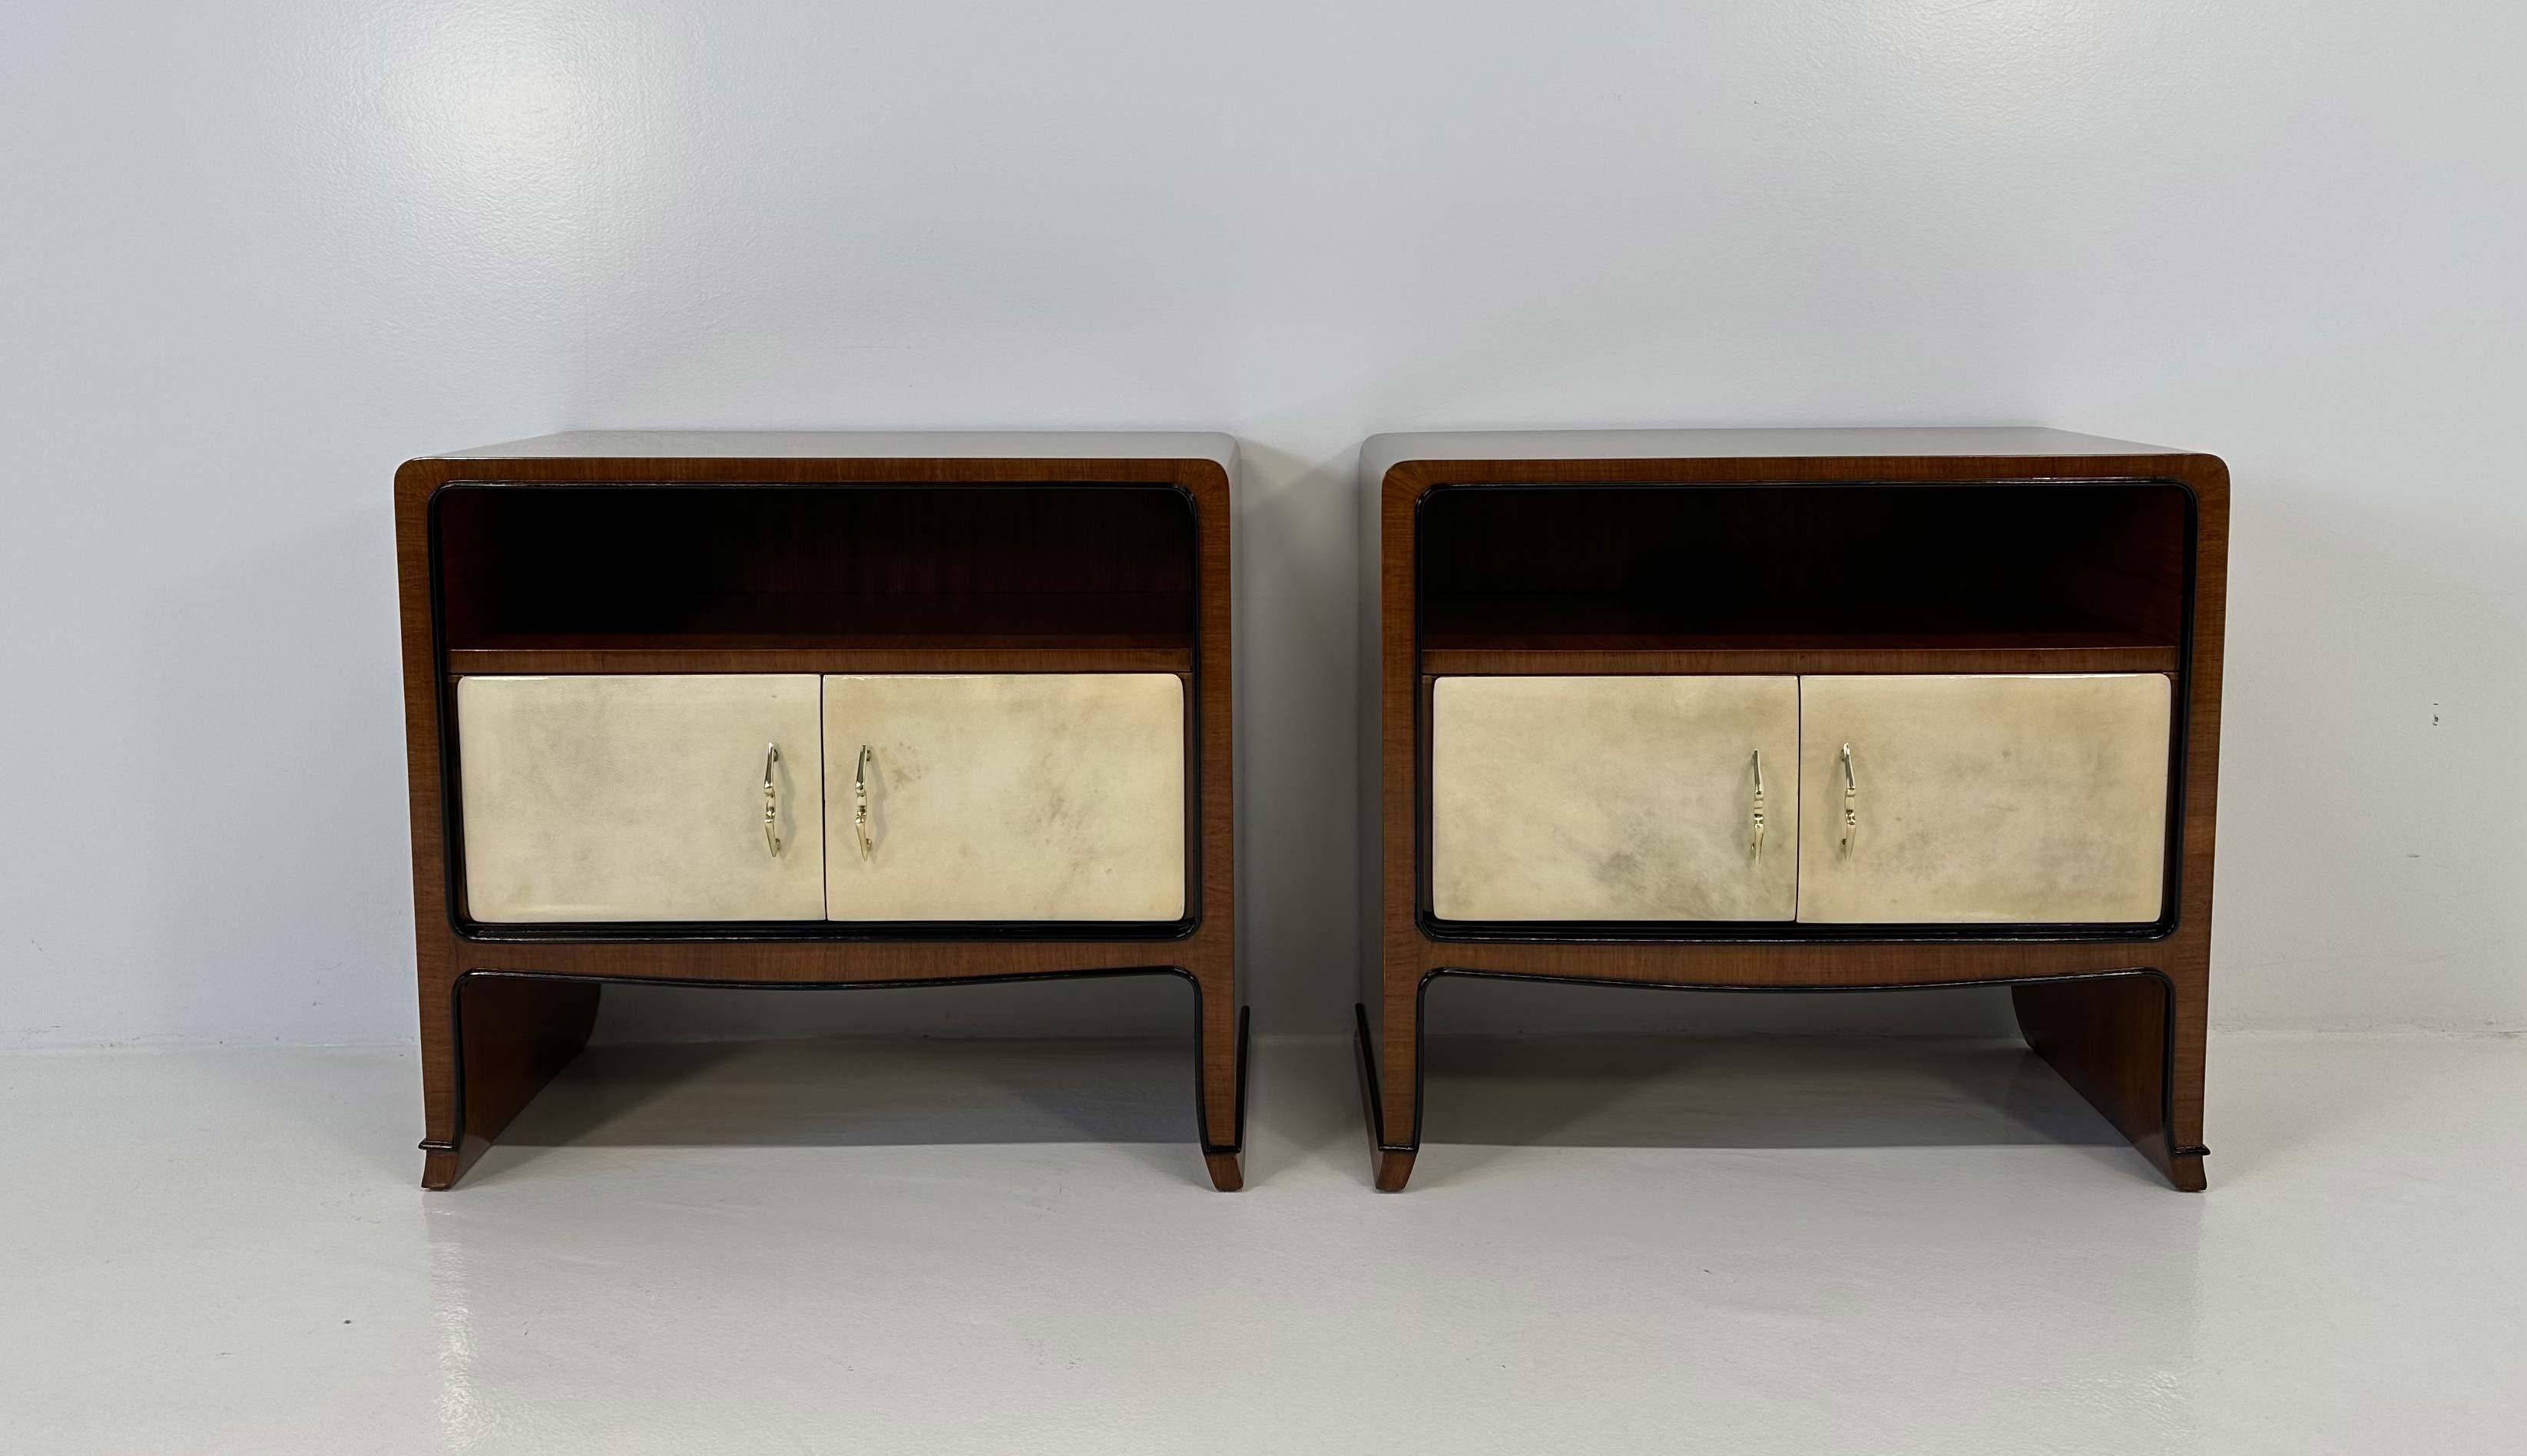 Cette élégante paire de tables de nuit Art déco a été produite par Paolo Buffa à la fin des années 1940. Ils sont en bois de noyer, avec une porte en parchemin et des détails laqués en noir, comme les profils. Les belles poignées sont en